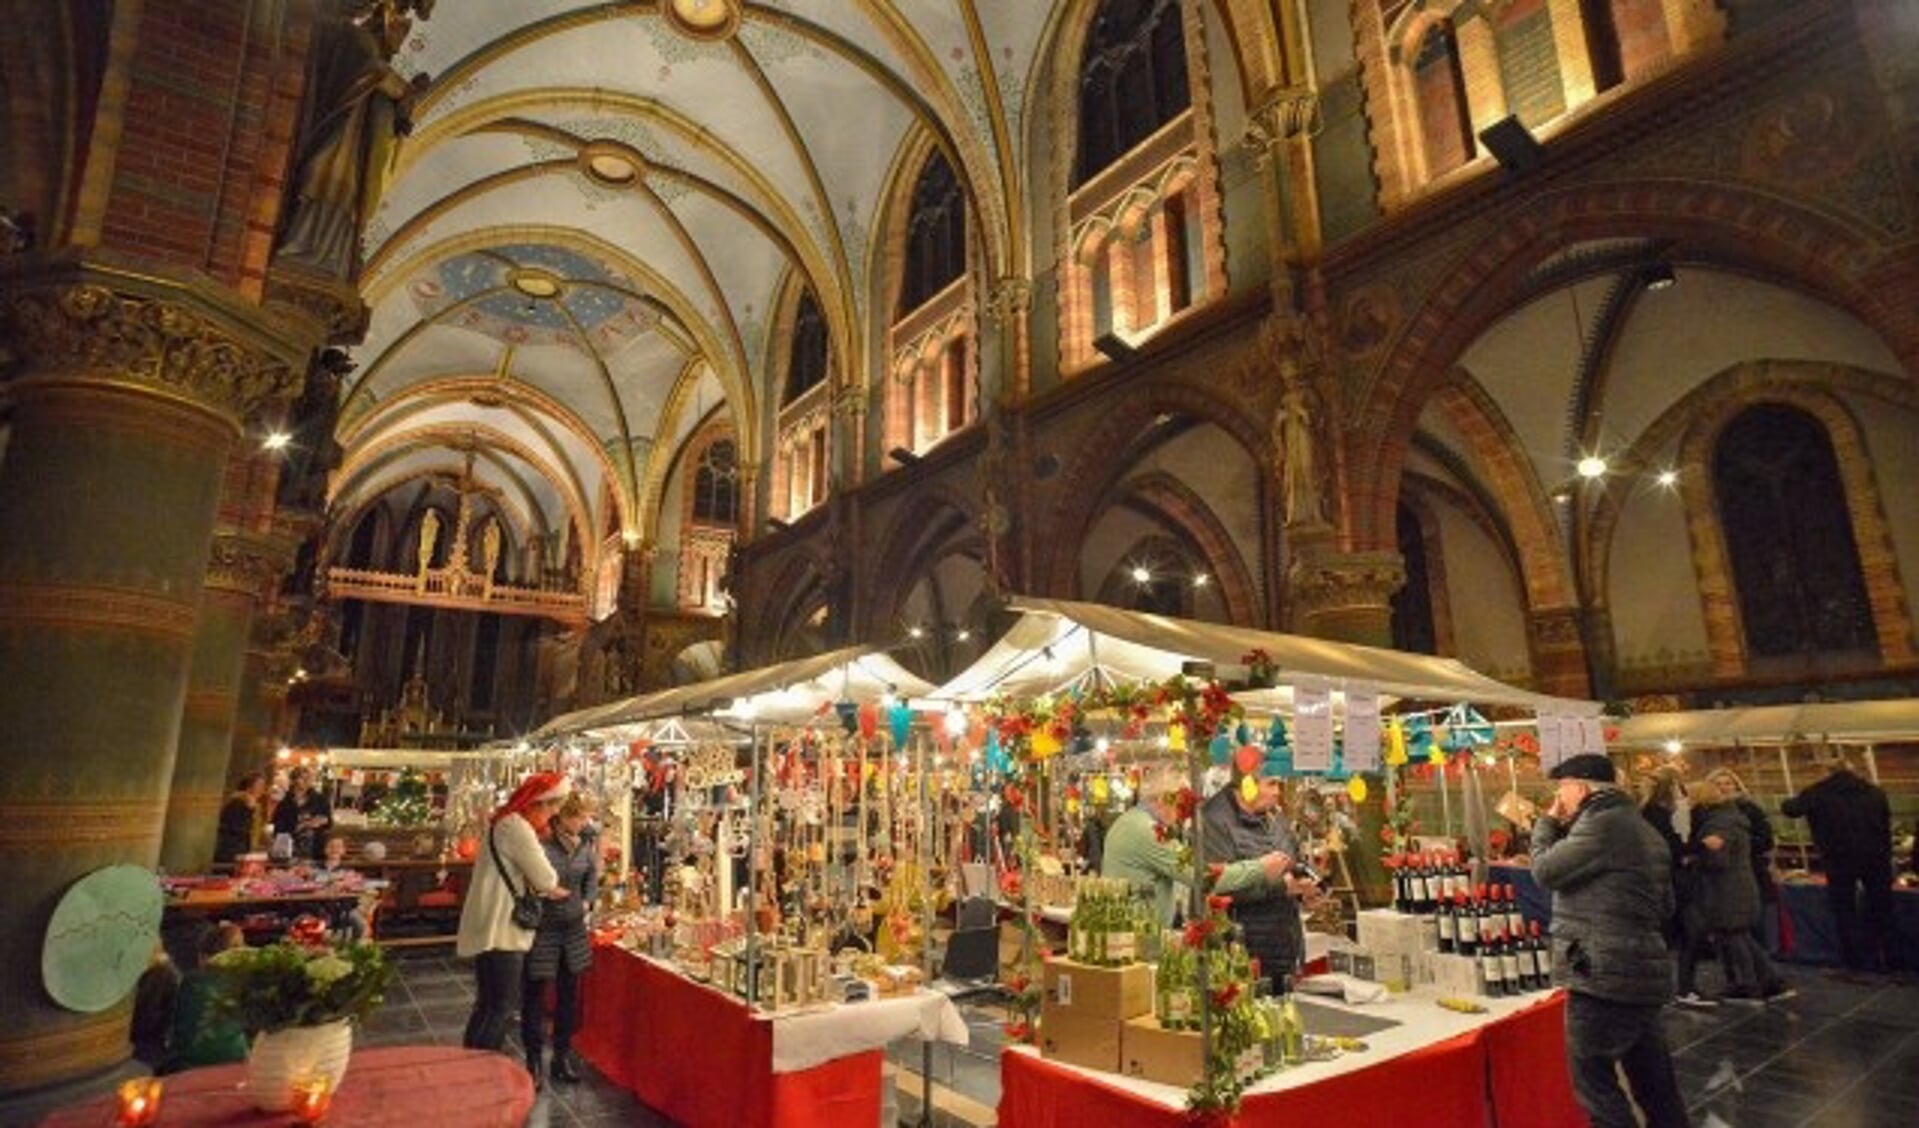 Kerstmarkt in de Sint Franciscuskerk in Oudewater, een jaarlijks hoogtepunt. De opbrengst is voor de restauratie van de kerk.(Foto: Paul van den Dungen)